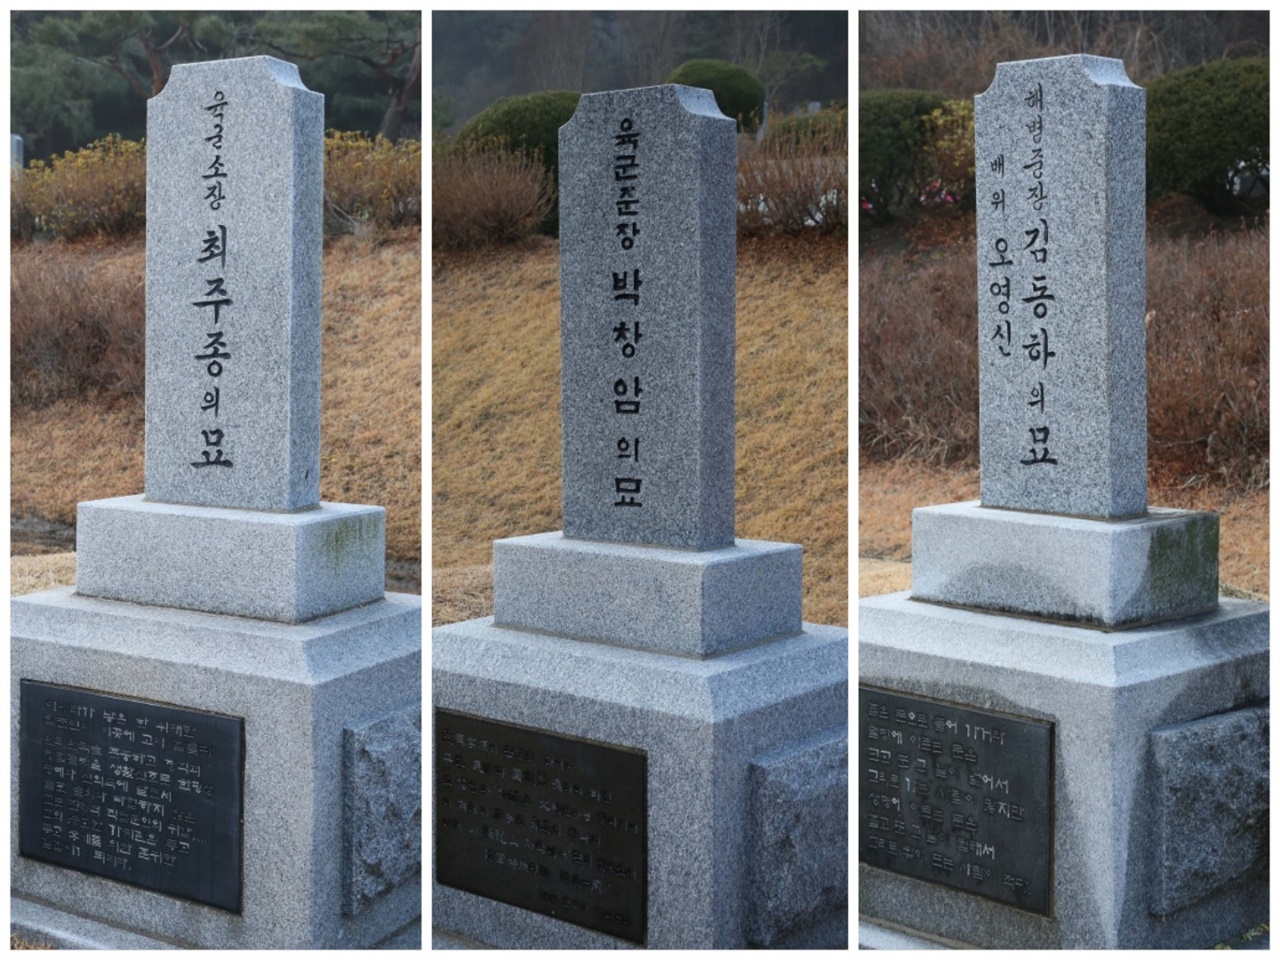 5.16 쿠데타 과정에 참여한 군인들 중 김동하, 최주종, 박창암은 친일 경력도 갖고 있다. 이들은 국립대전현충원 장군묘역에 안장되어 있다. 